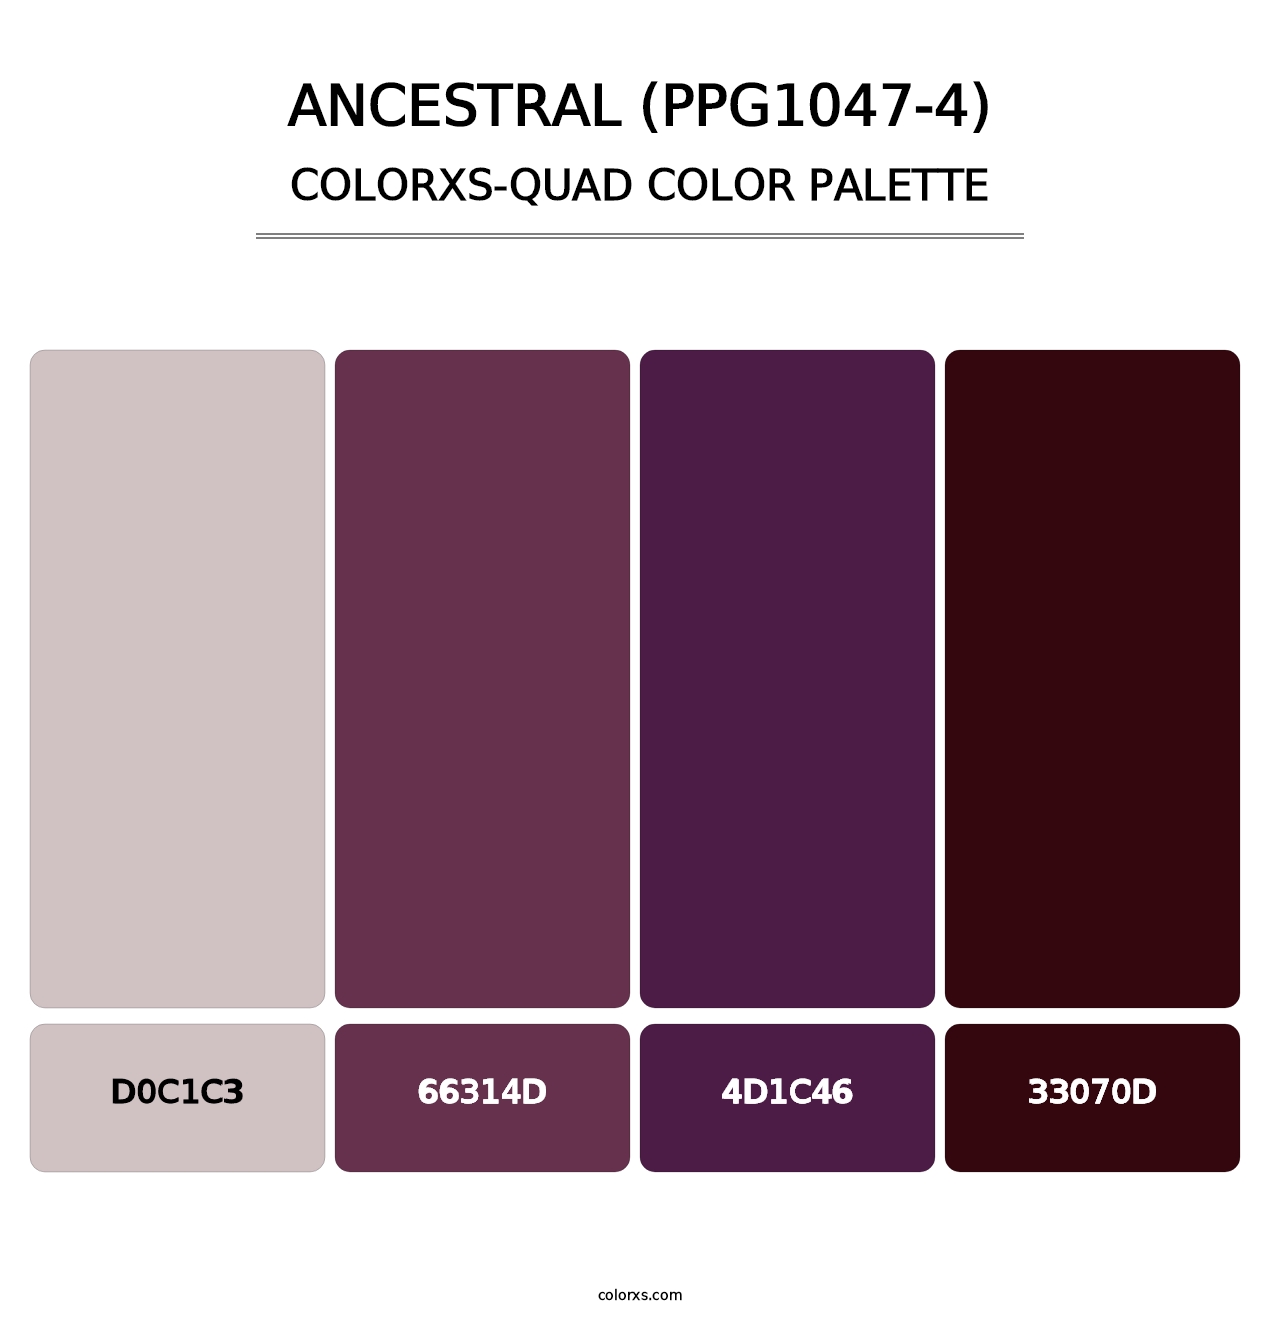 Ancestral (PPG1047-4) - Colorxs Quad Palette